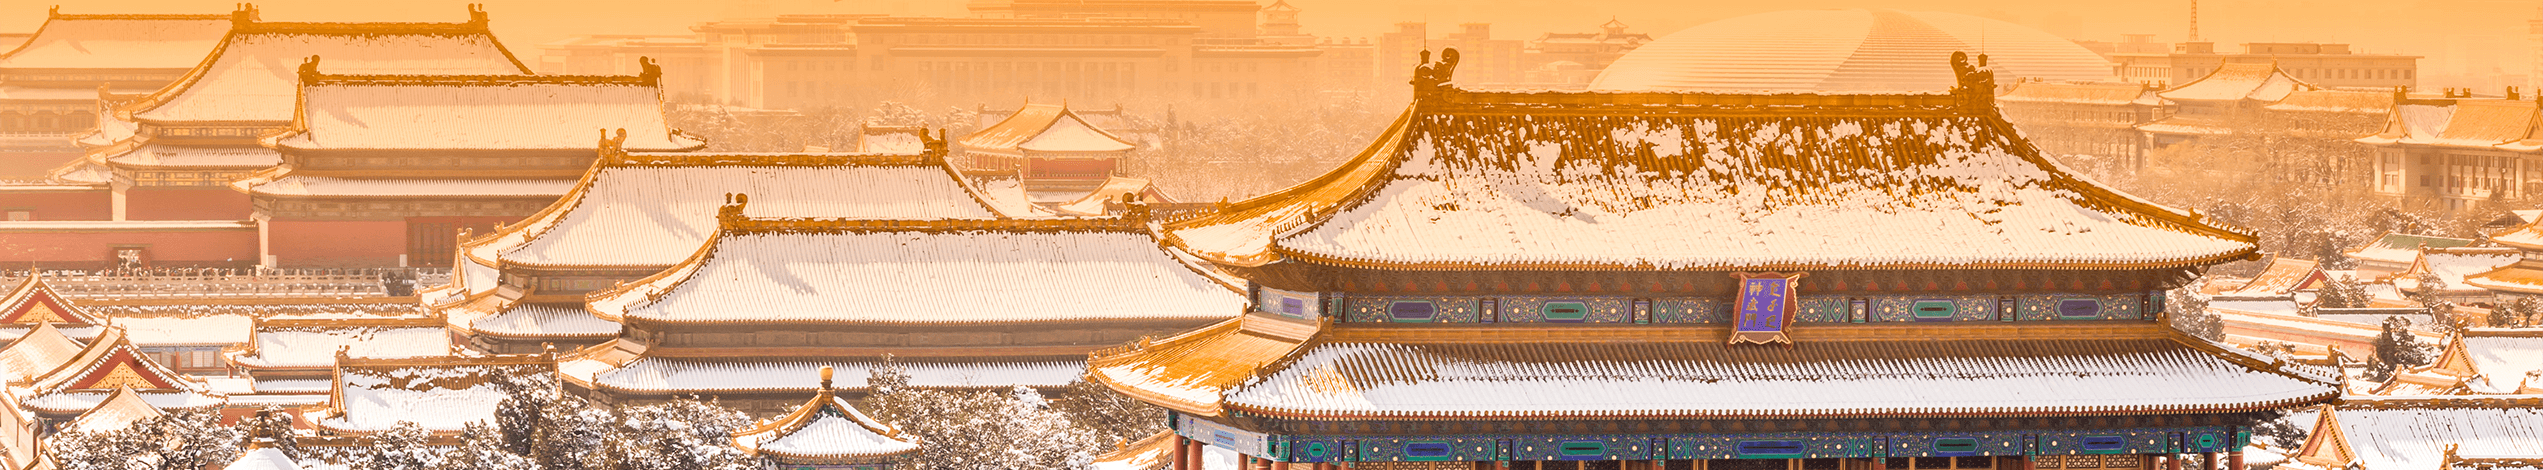 Vinter i Beijing